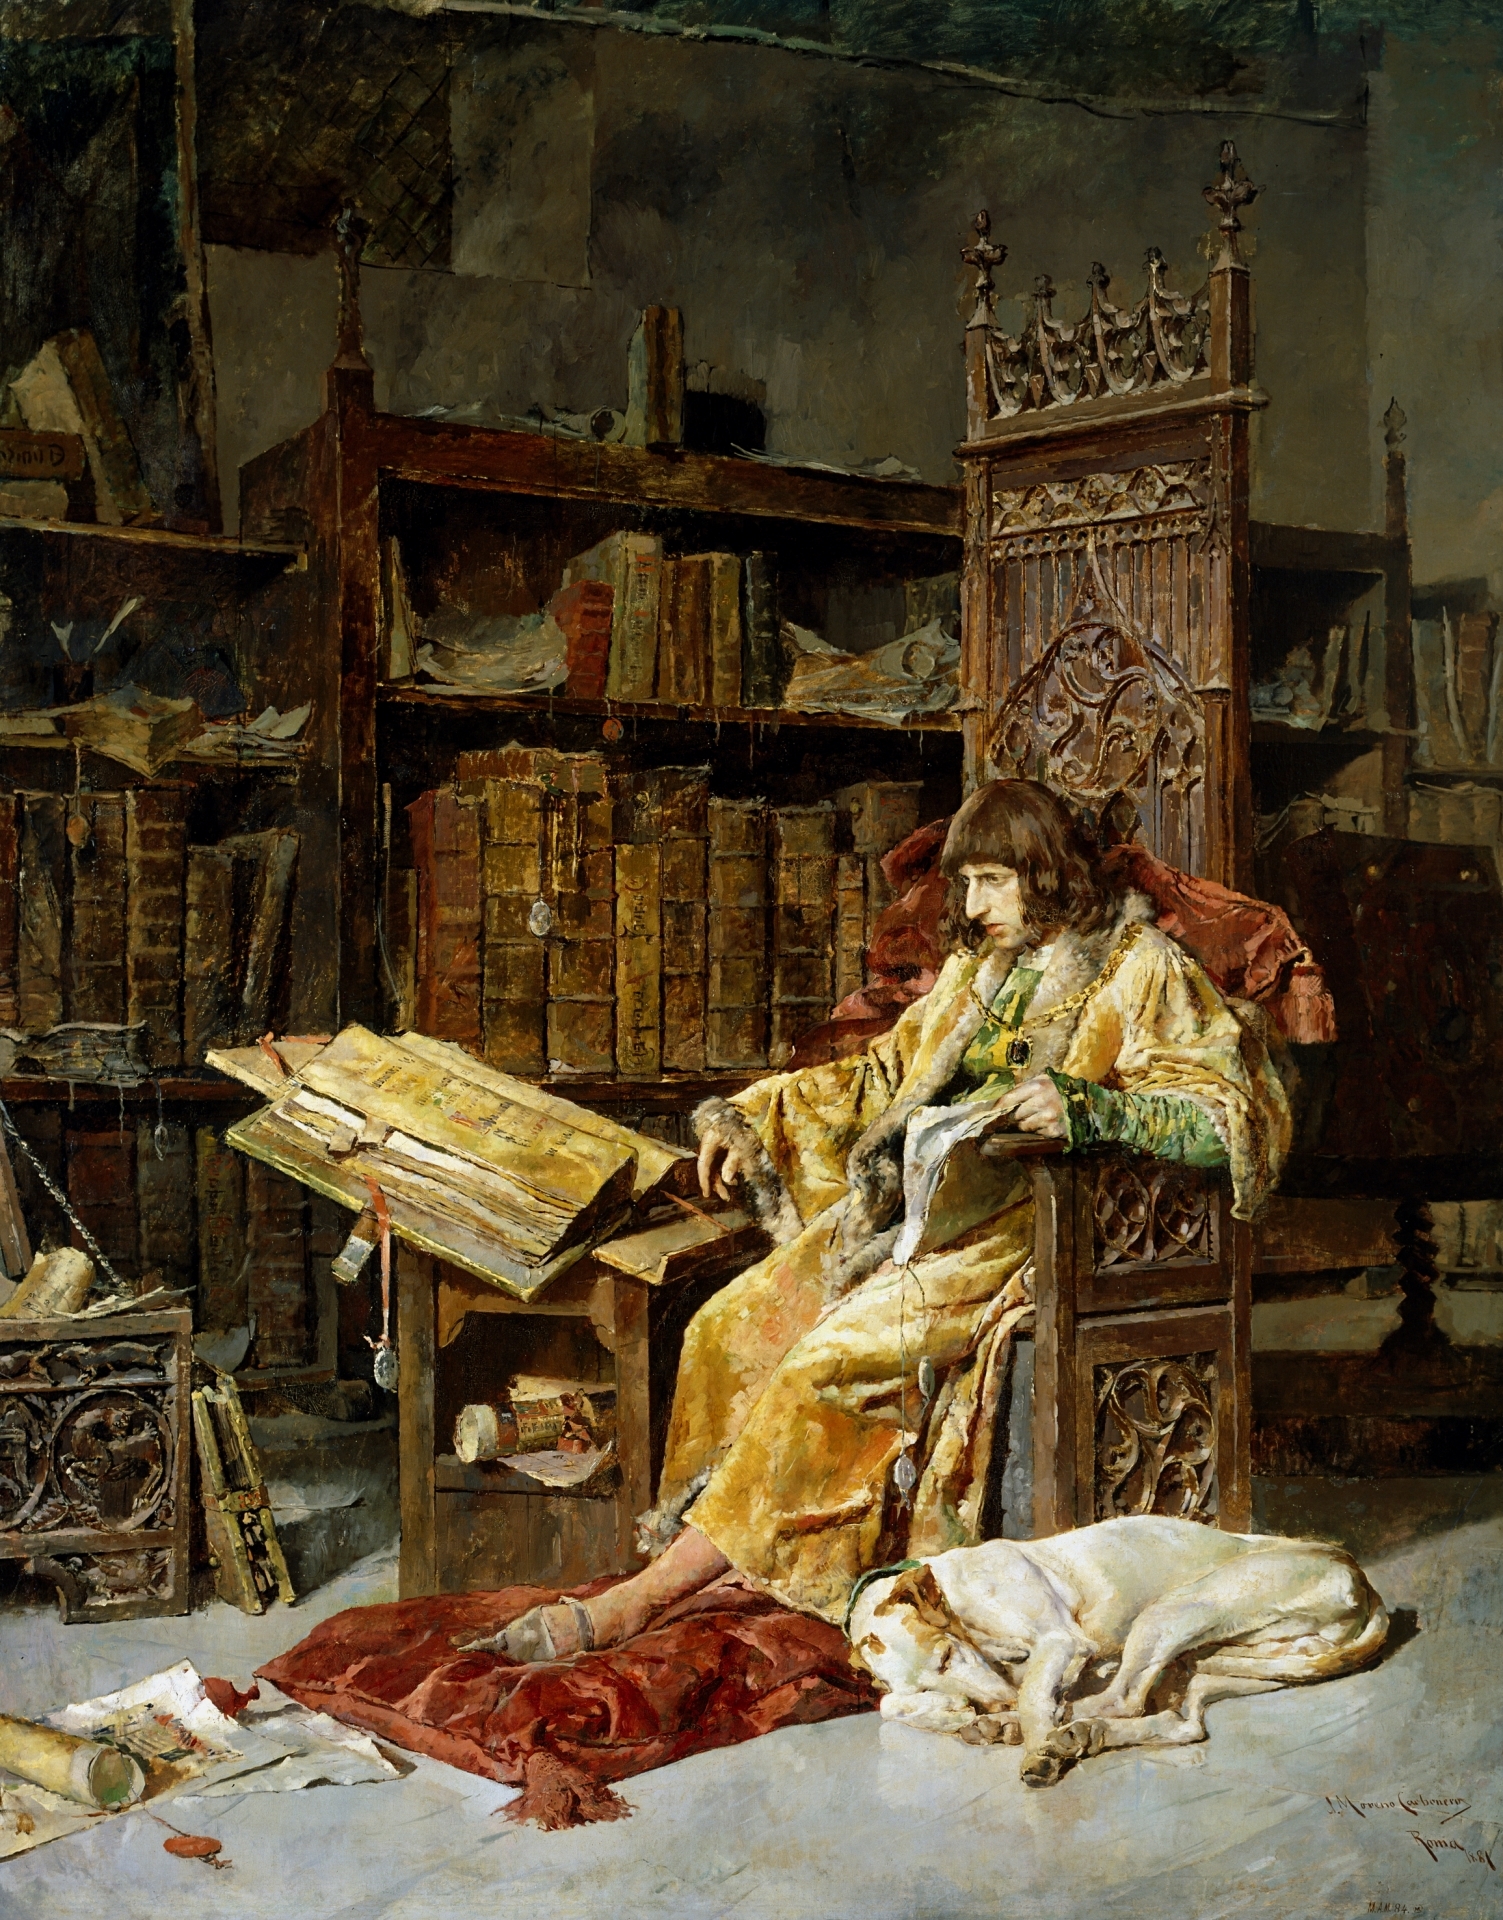 ドン・カルロス・デ・ヴィアナ by Jose Moreno Carbonero - 1881年 - 310 x 242 cm 